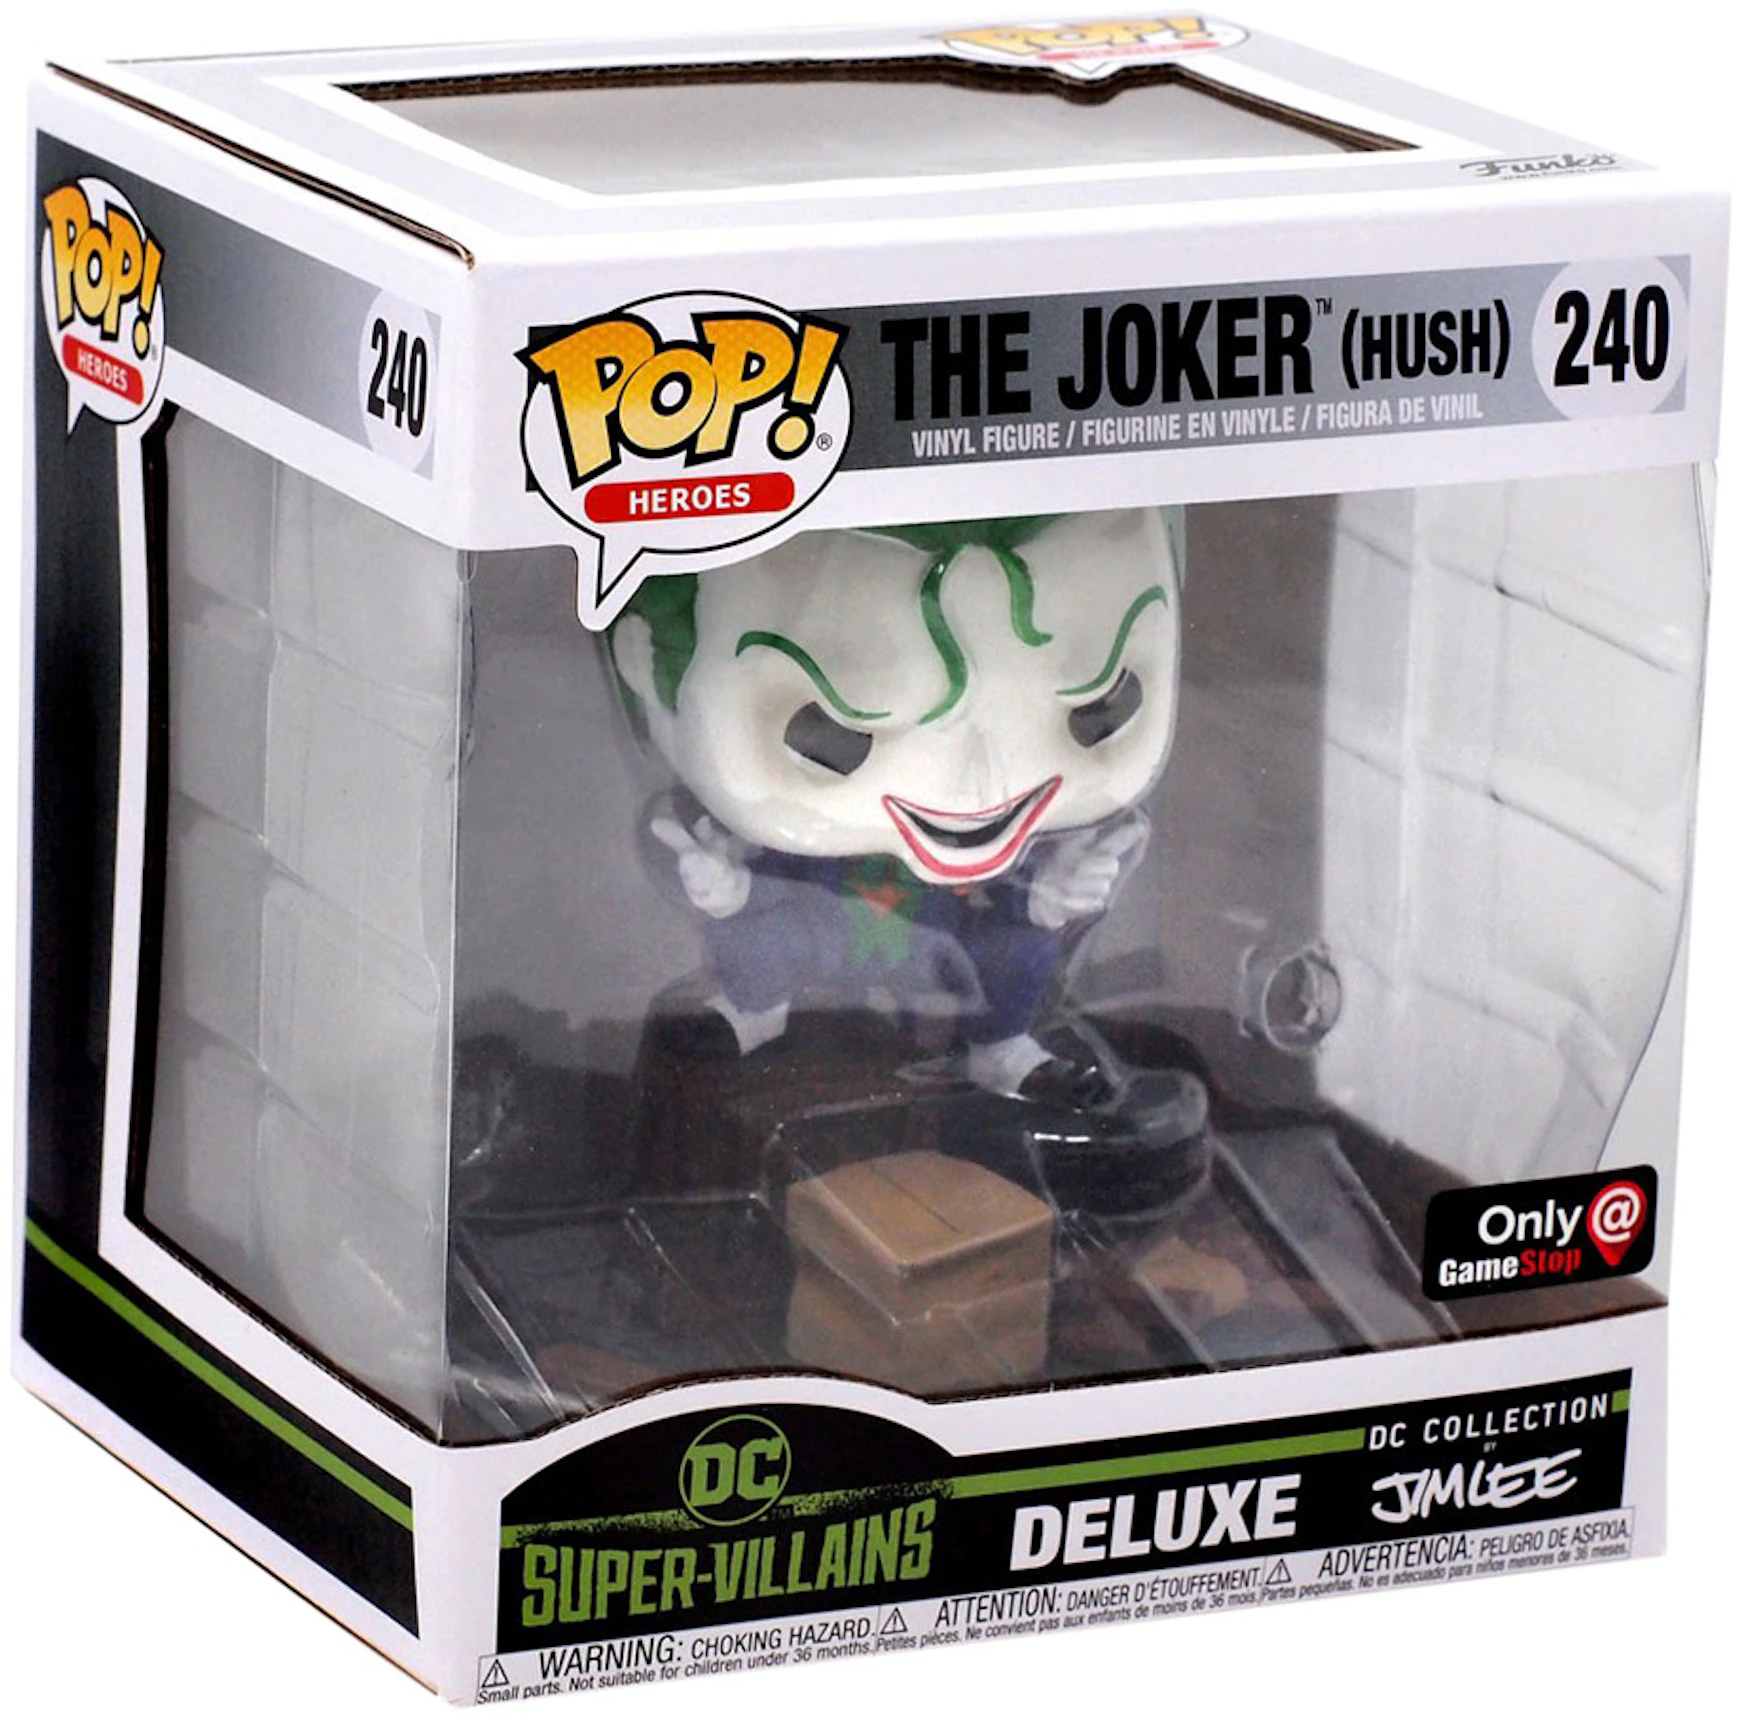 Funko Pop! Heroes DC Collection by Jim Lee The Joker Hush GameStop  Exclusive Deluxe Figure #240 - US